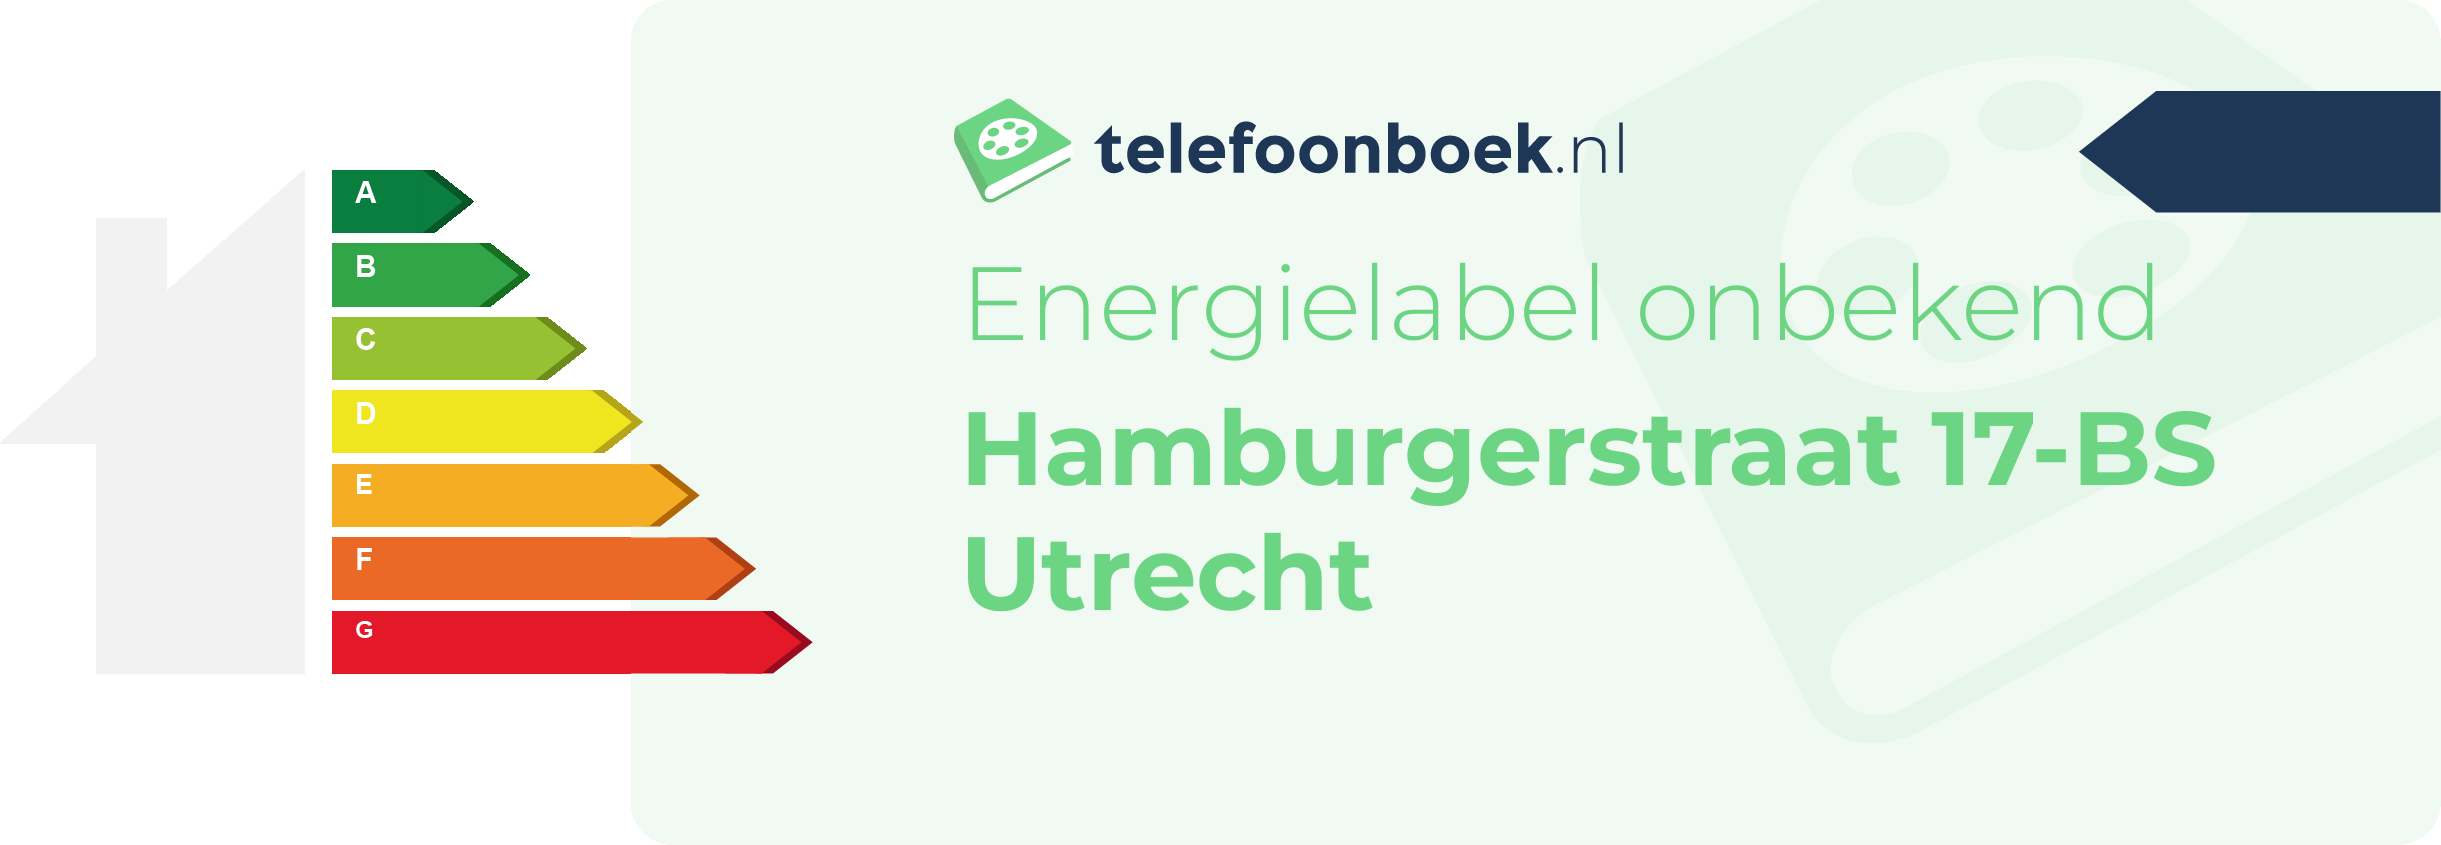 Energielabel Hamburgerstraat 17-BS Utrecht